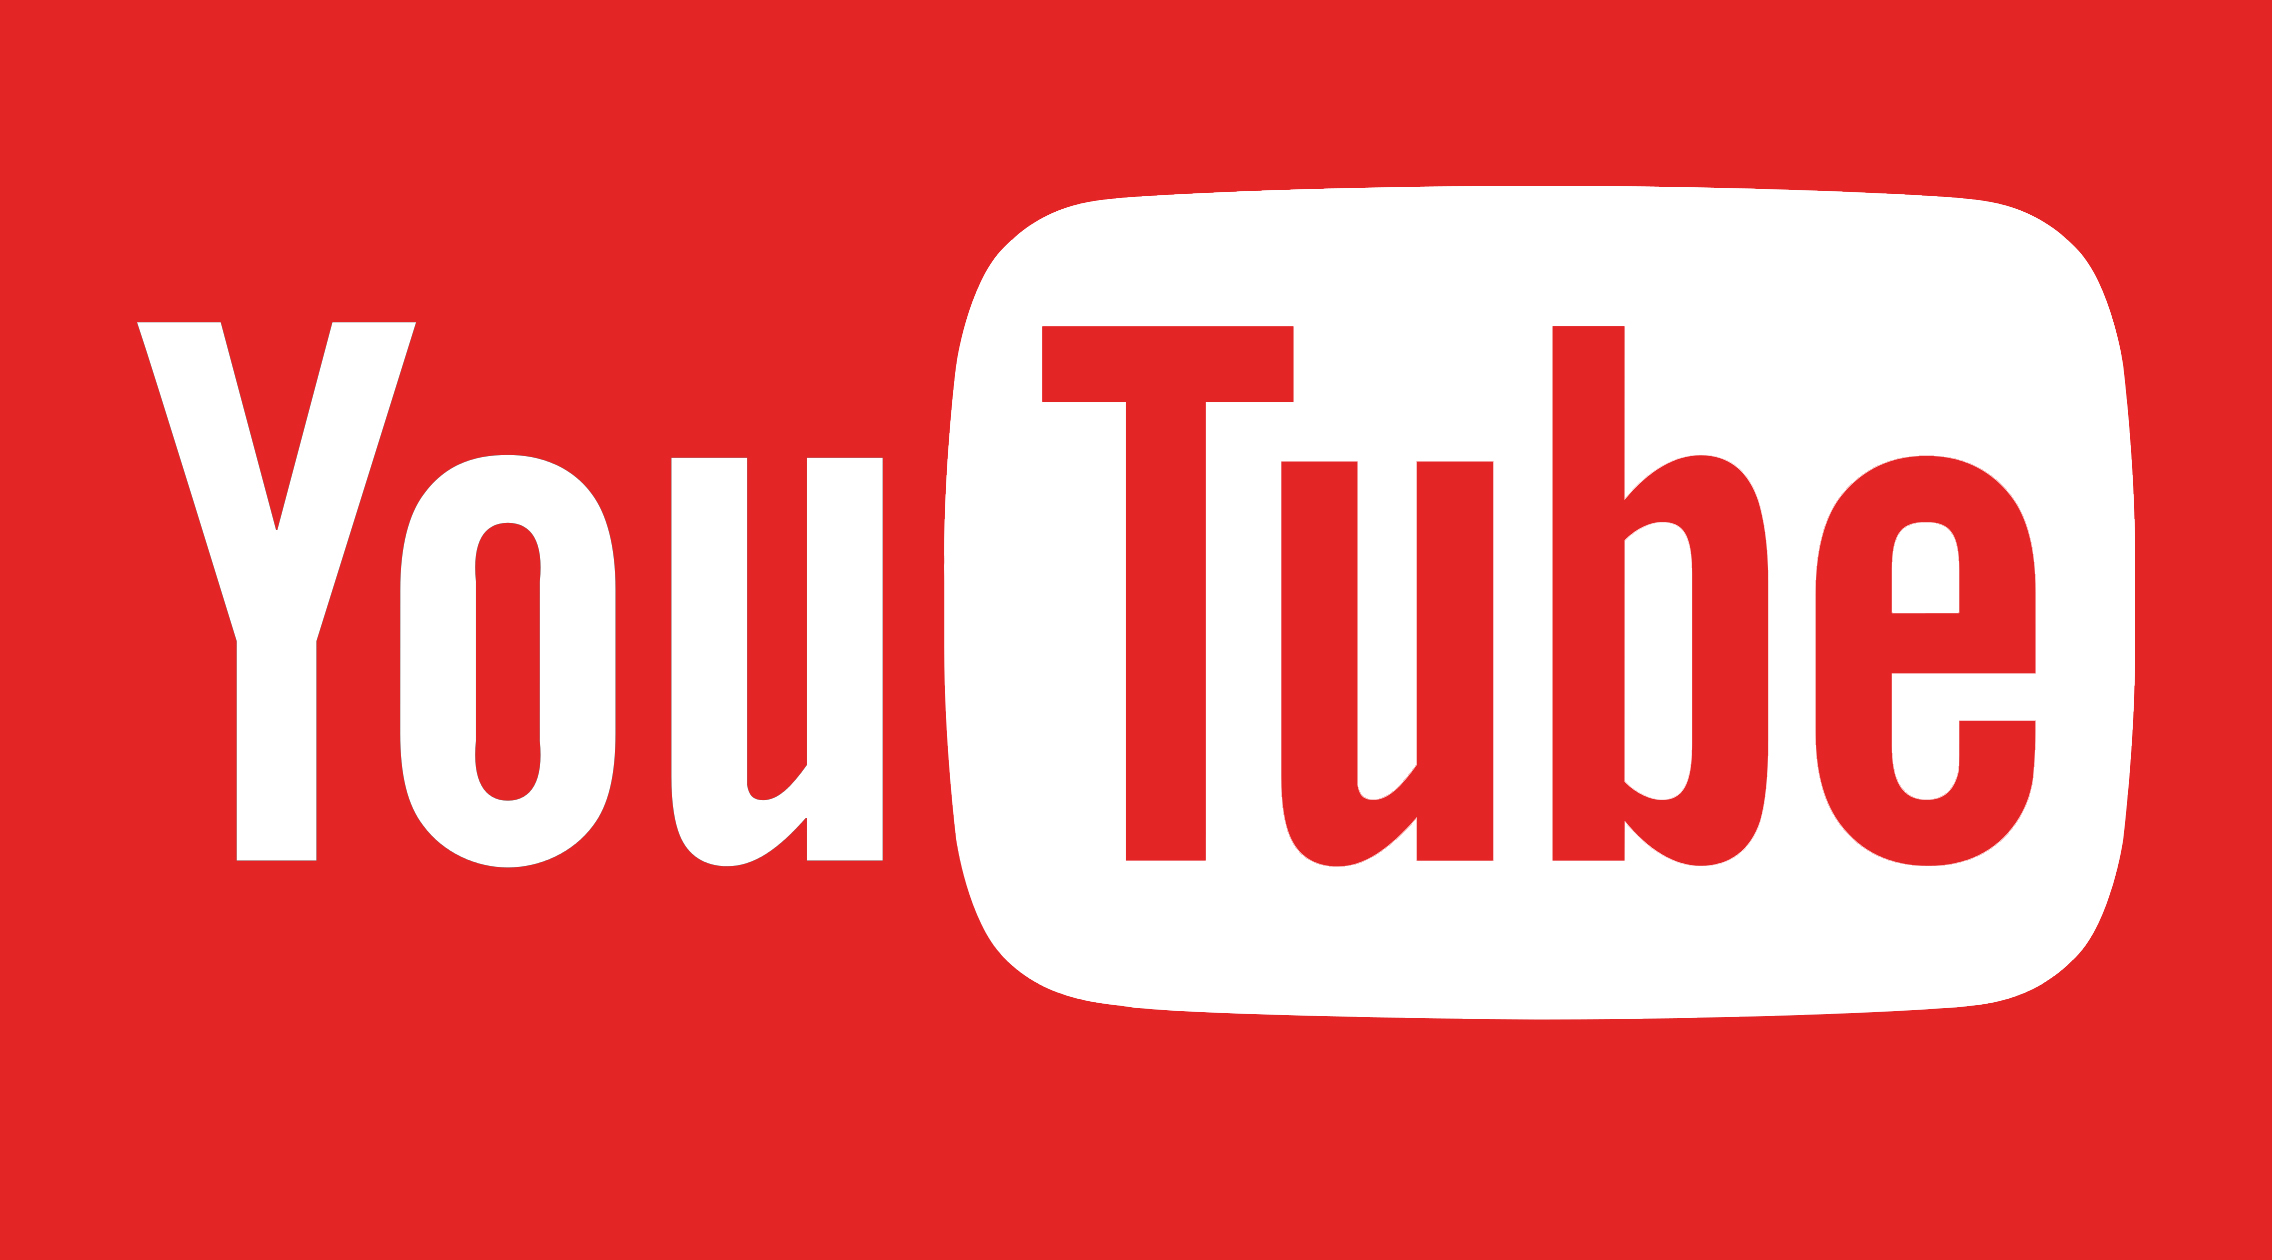 شعار يوتيوب القديم